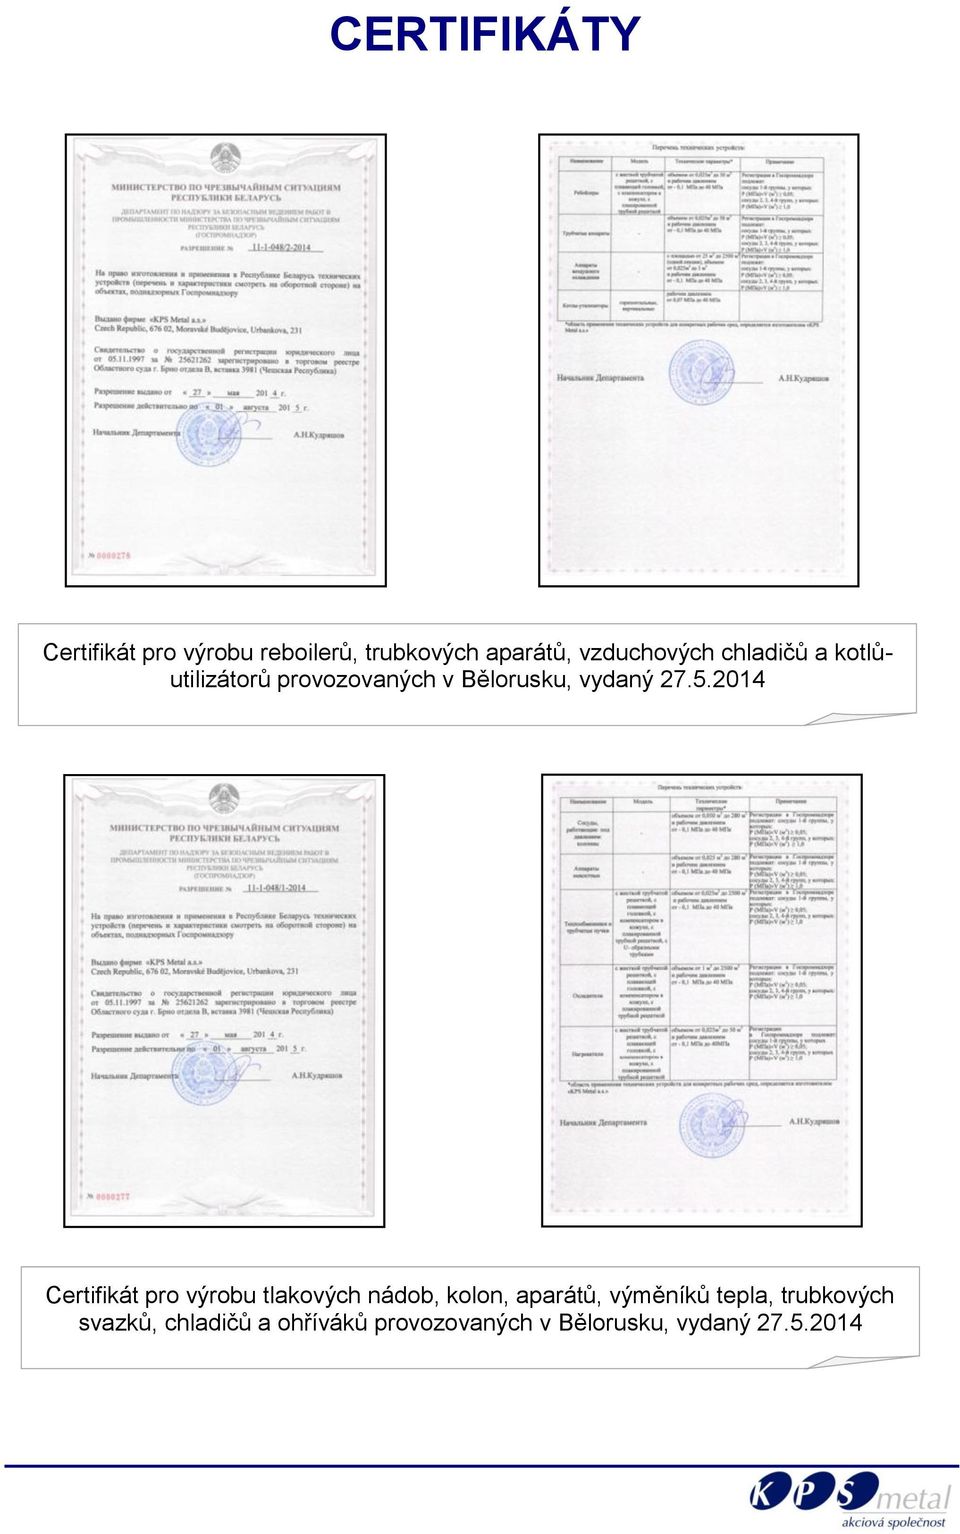 27.5.2014 Certifikát pro výrobu tlakových nádob, kolon, aparátů, výměníků